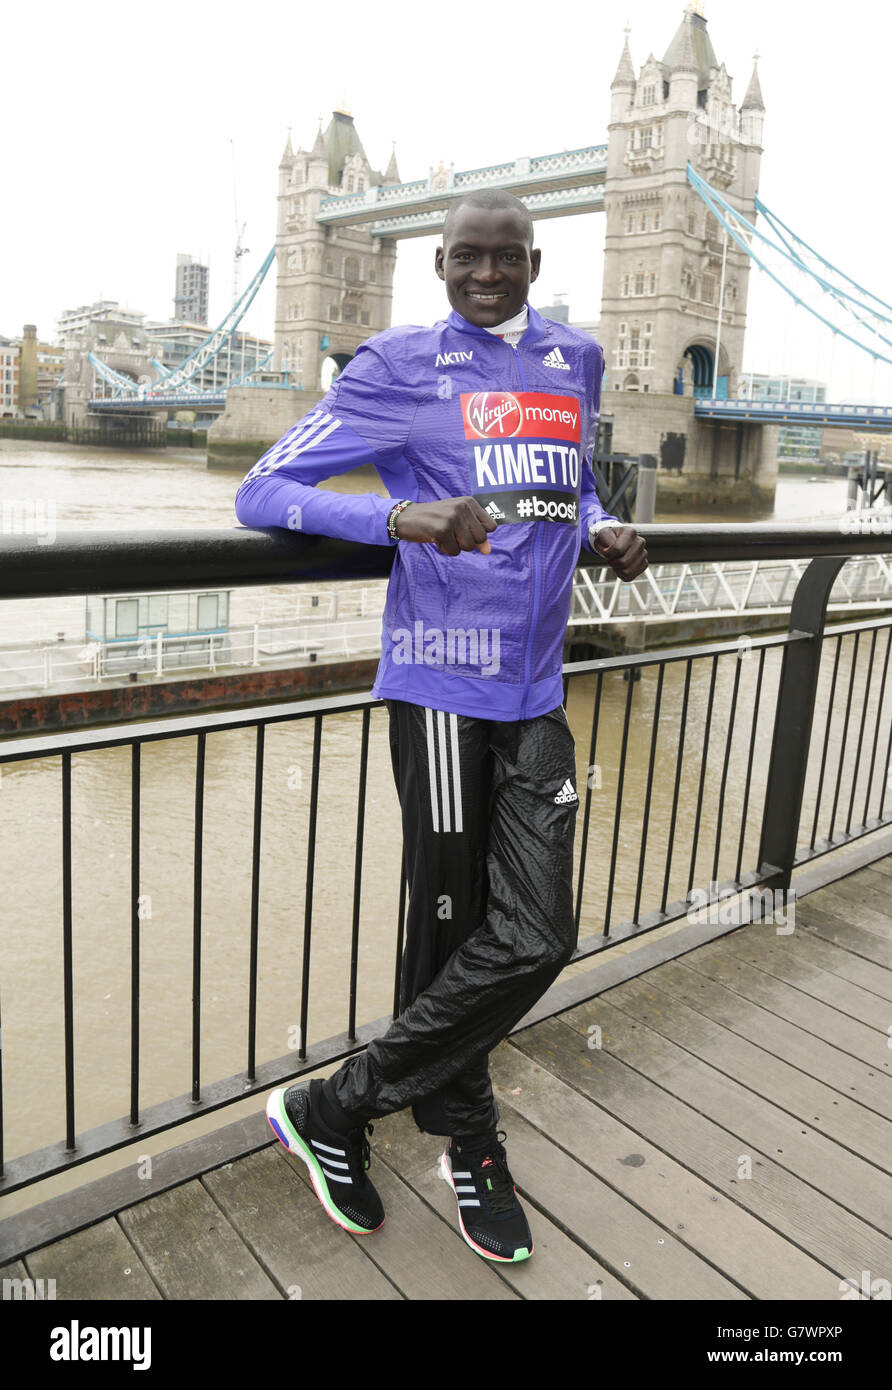 Leichtathletik - Virgin Money London Marathon 2015 - Elite Fotocall für Männer - Tower Hotel. Dennis Kimetto, der Elite-Läufer aus Kenia, während einer Fotoausstellung für die Elite Men-Einsendungen vor dem London Marathon im Tower Hotel in London. Stockfoto